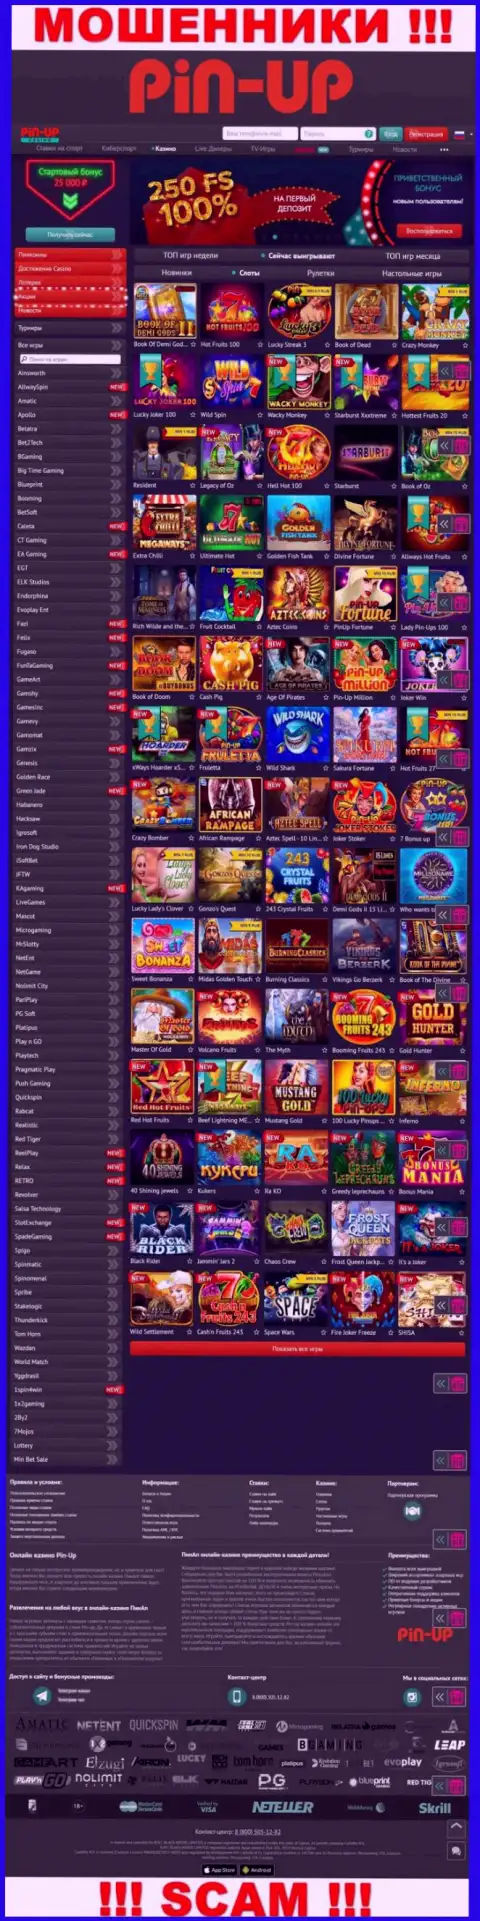 Pin-Up Casino - это официальный онлайн-сервис жуликов Pin-Up Casino